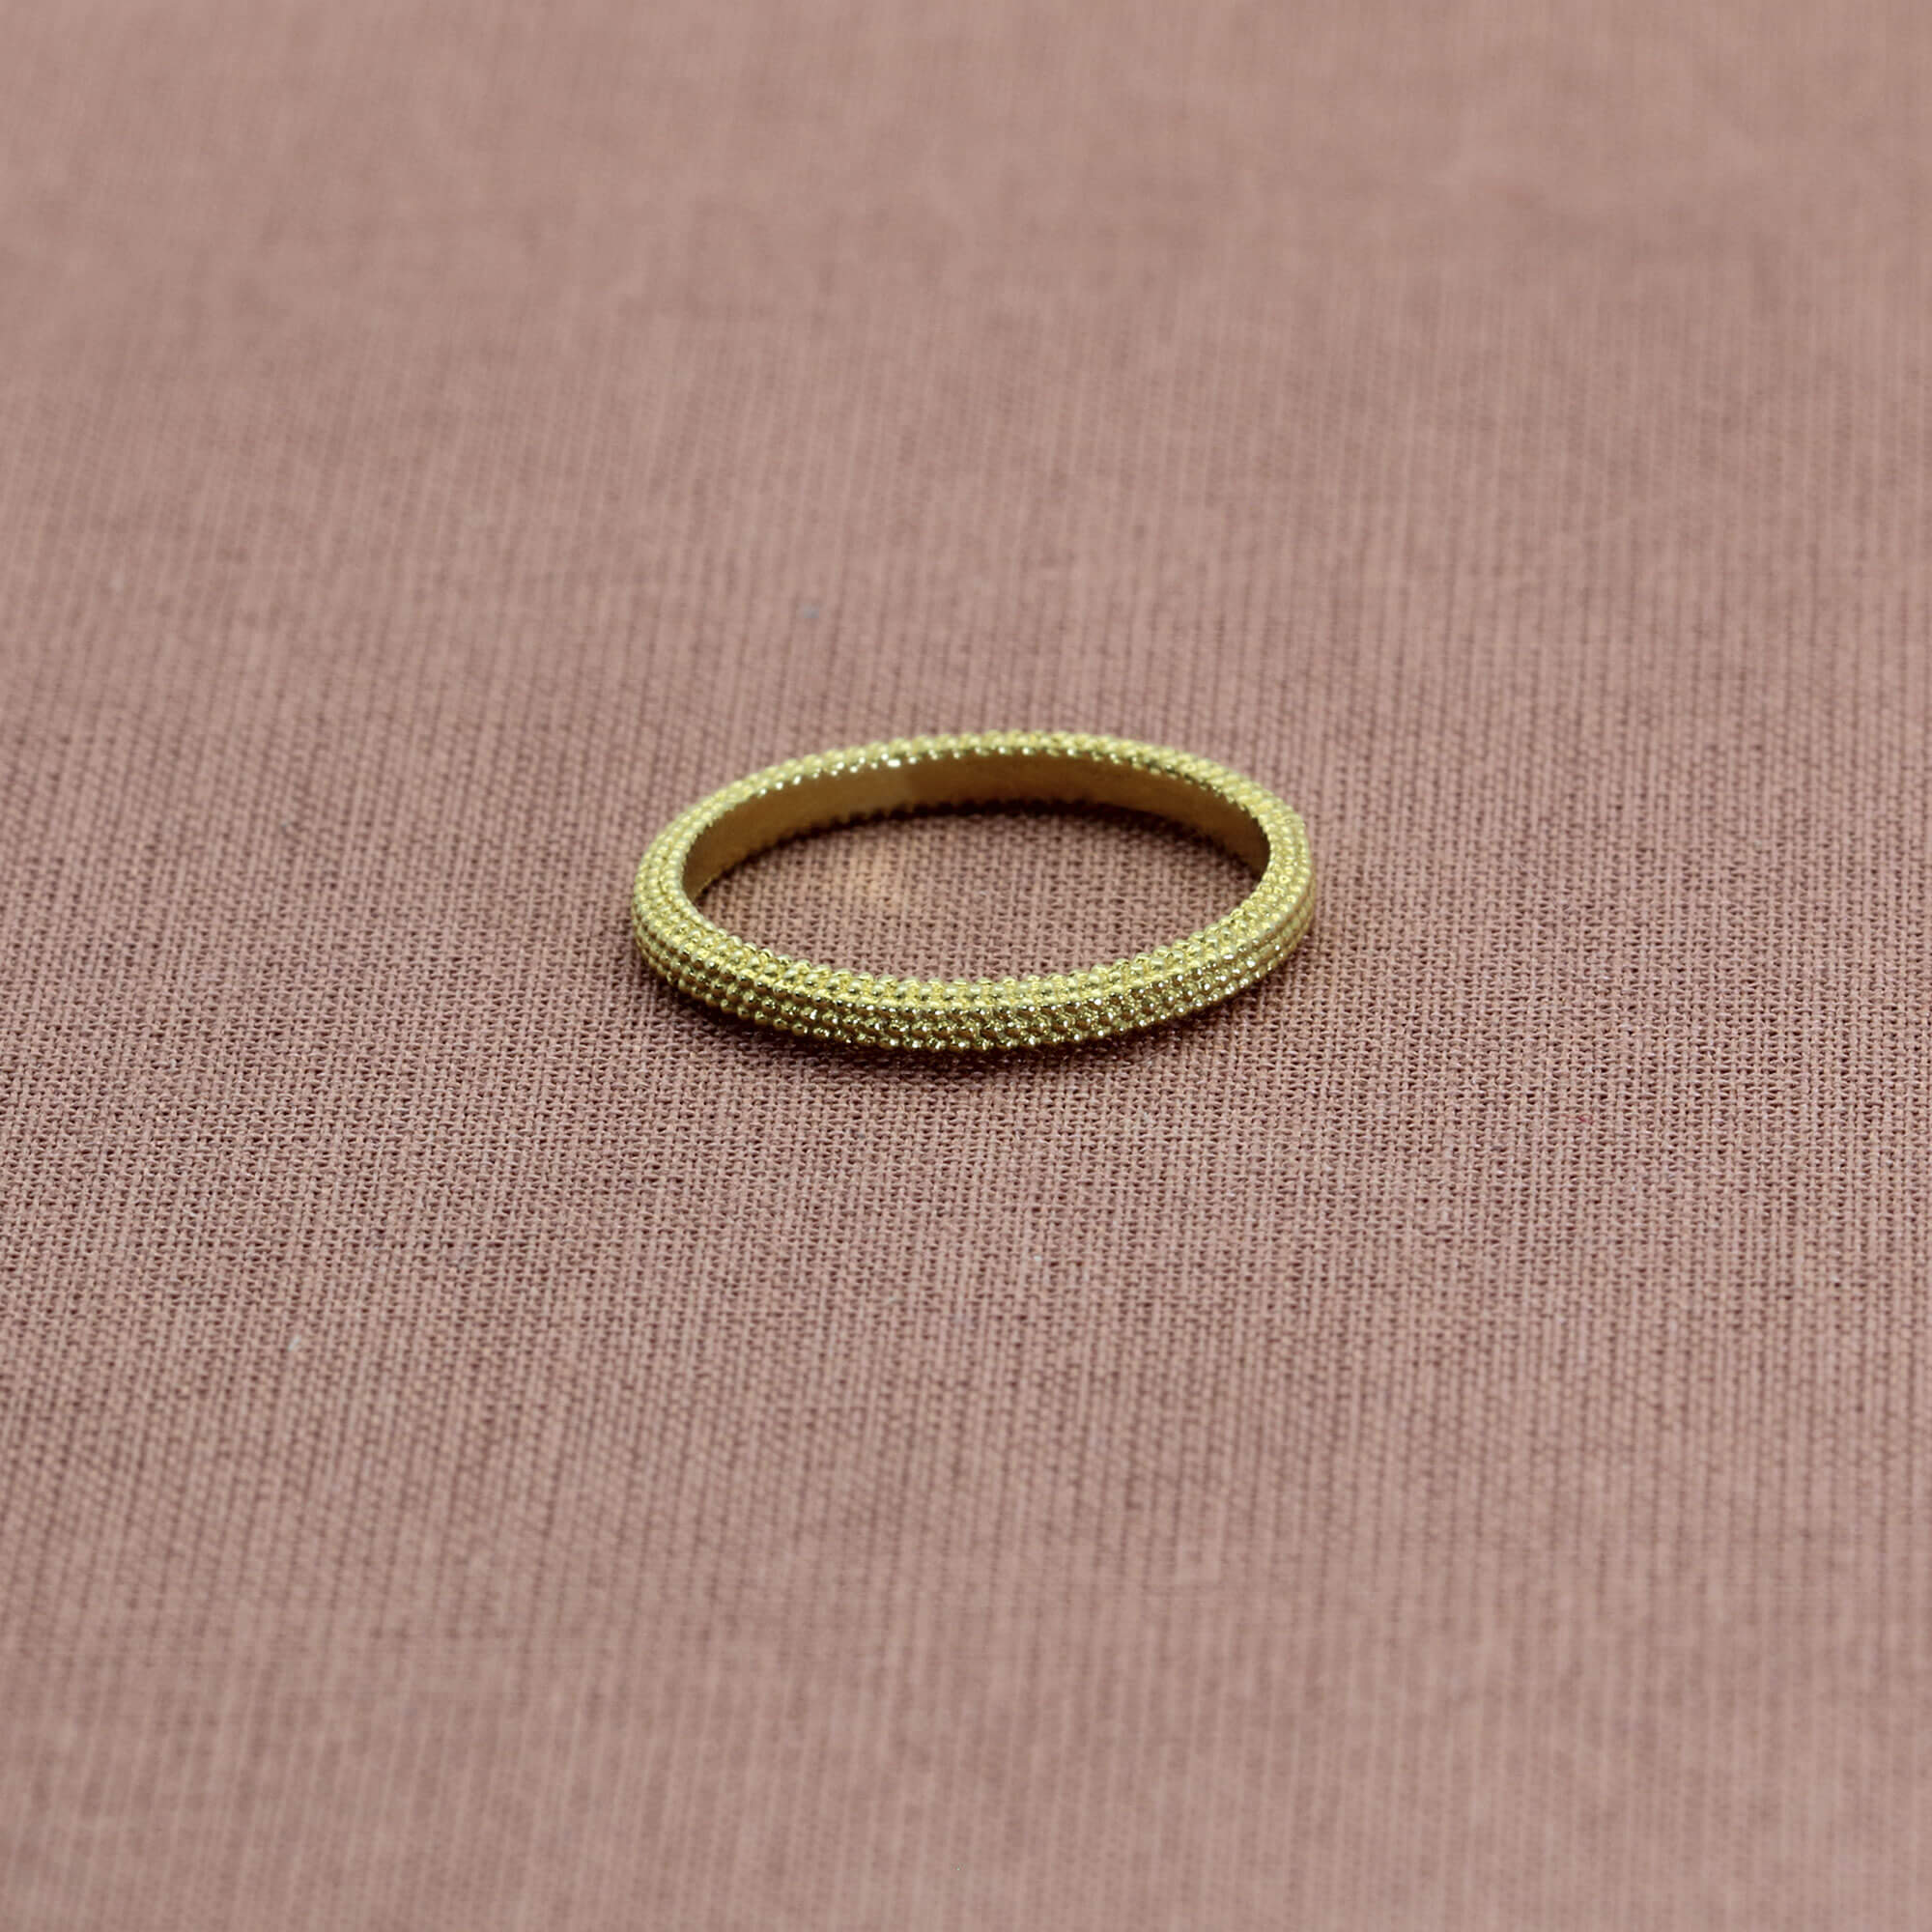 Tyro Yellow Gold Ring